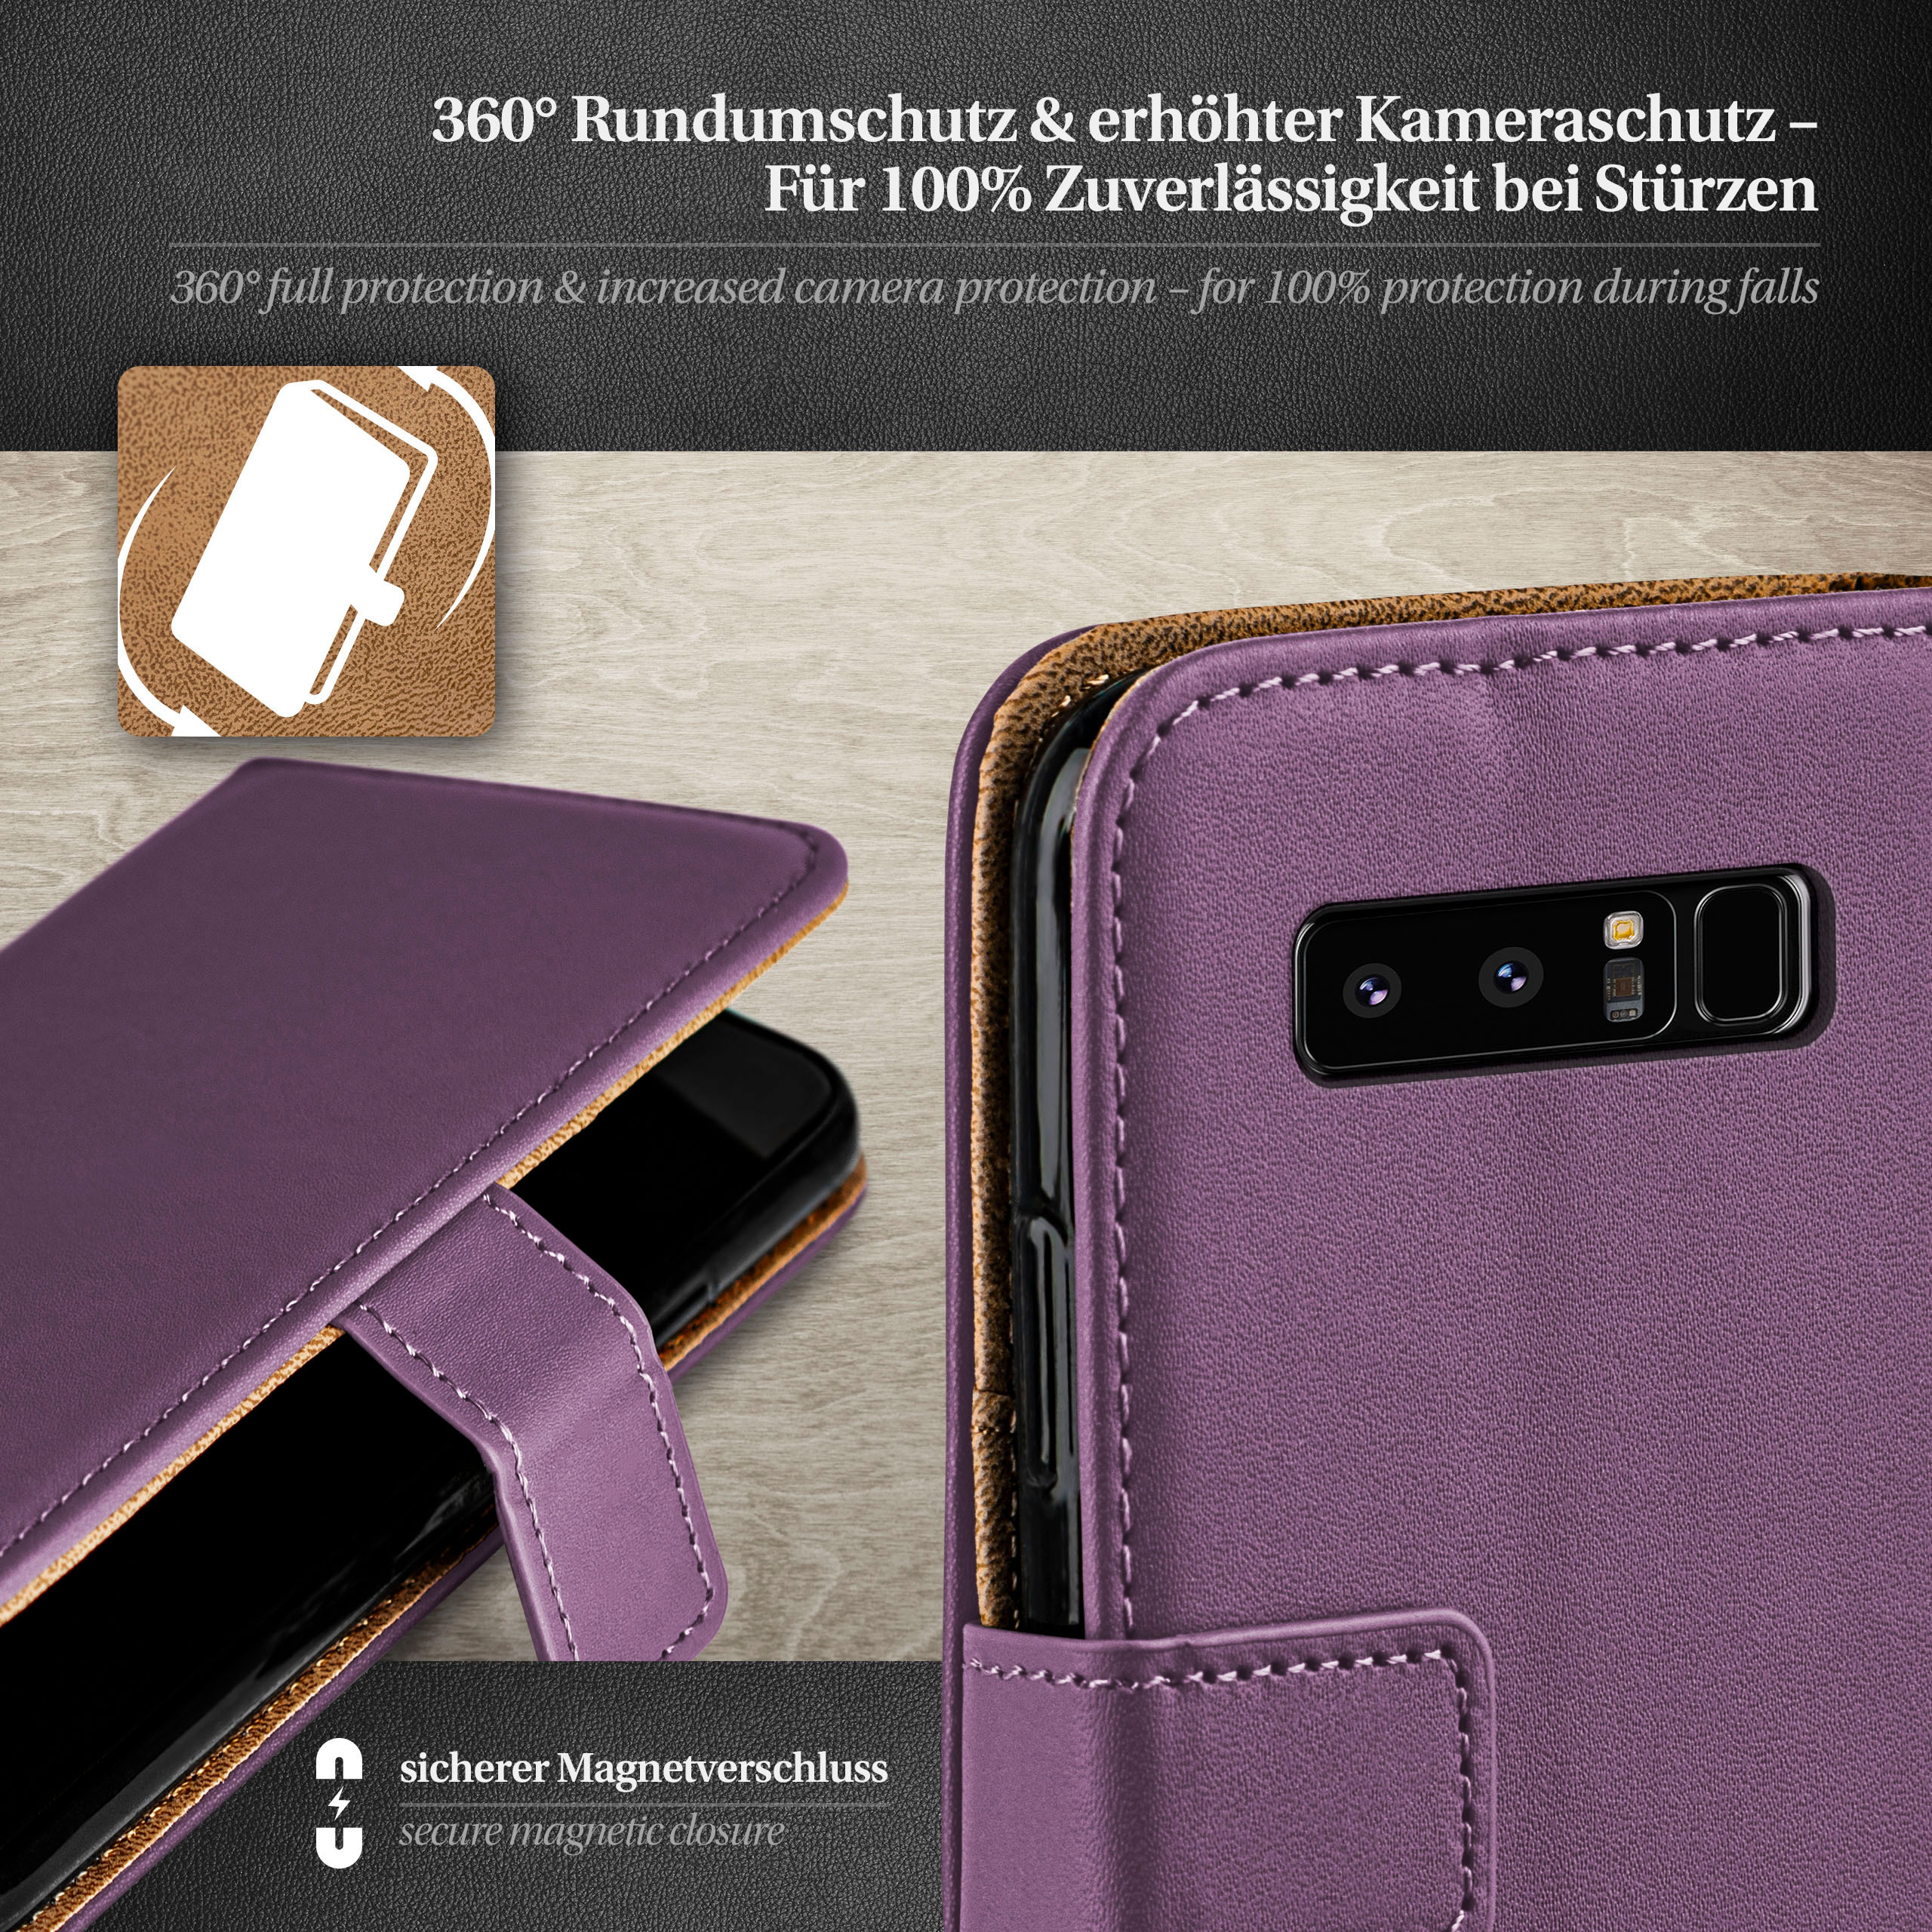 8, Indigo-Violet MOEX Note Galaxy Case, Samsung, Bookcover, Book